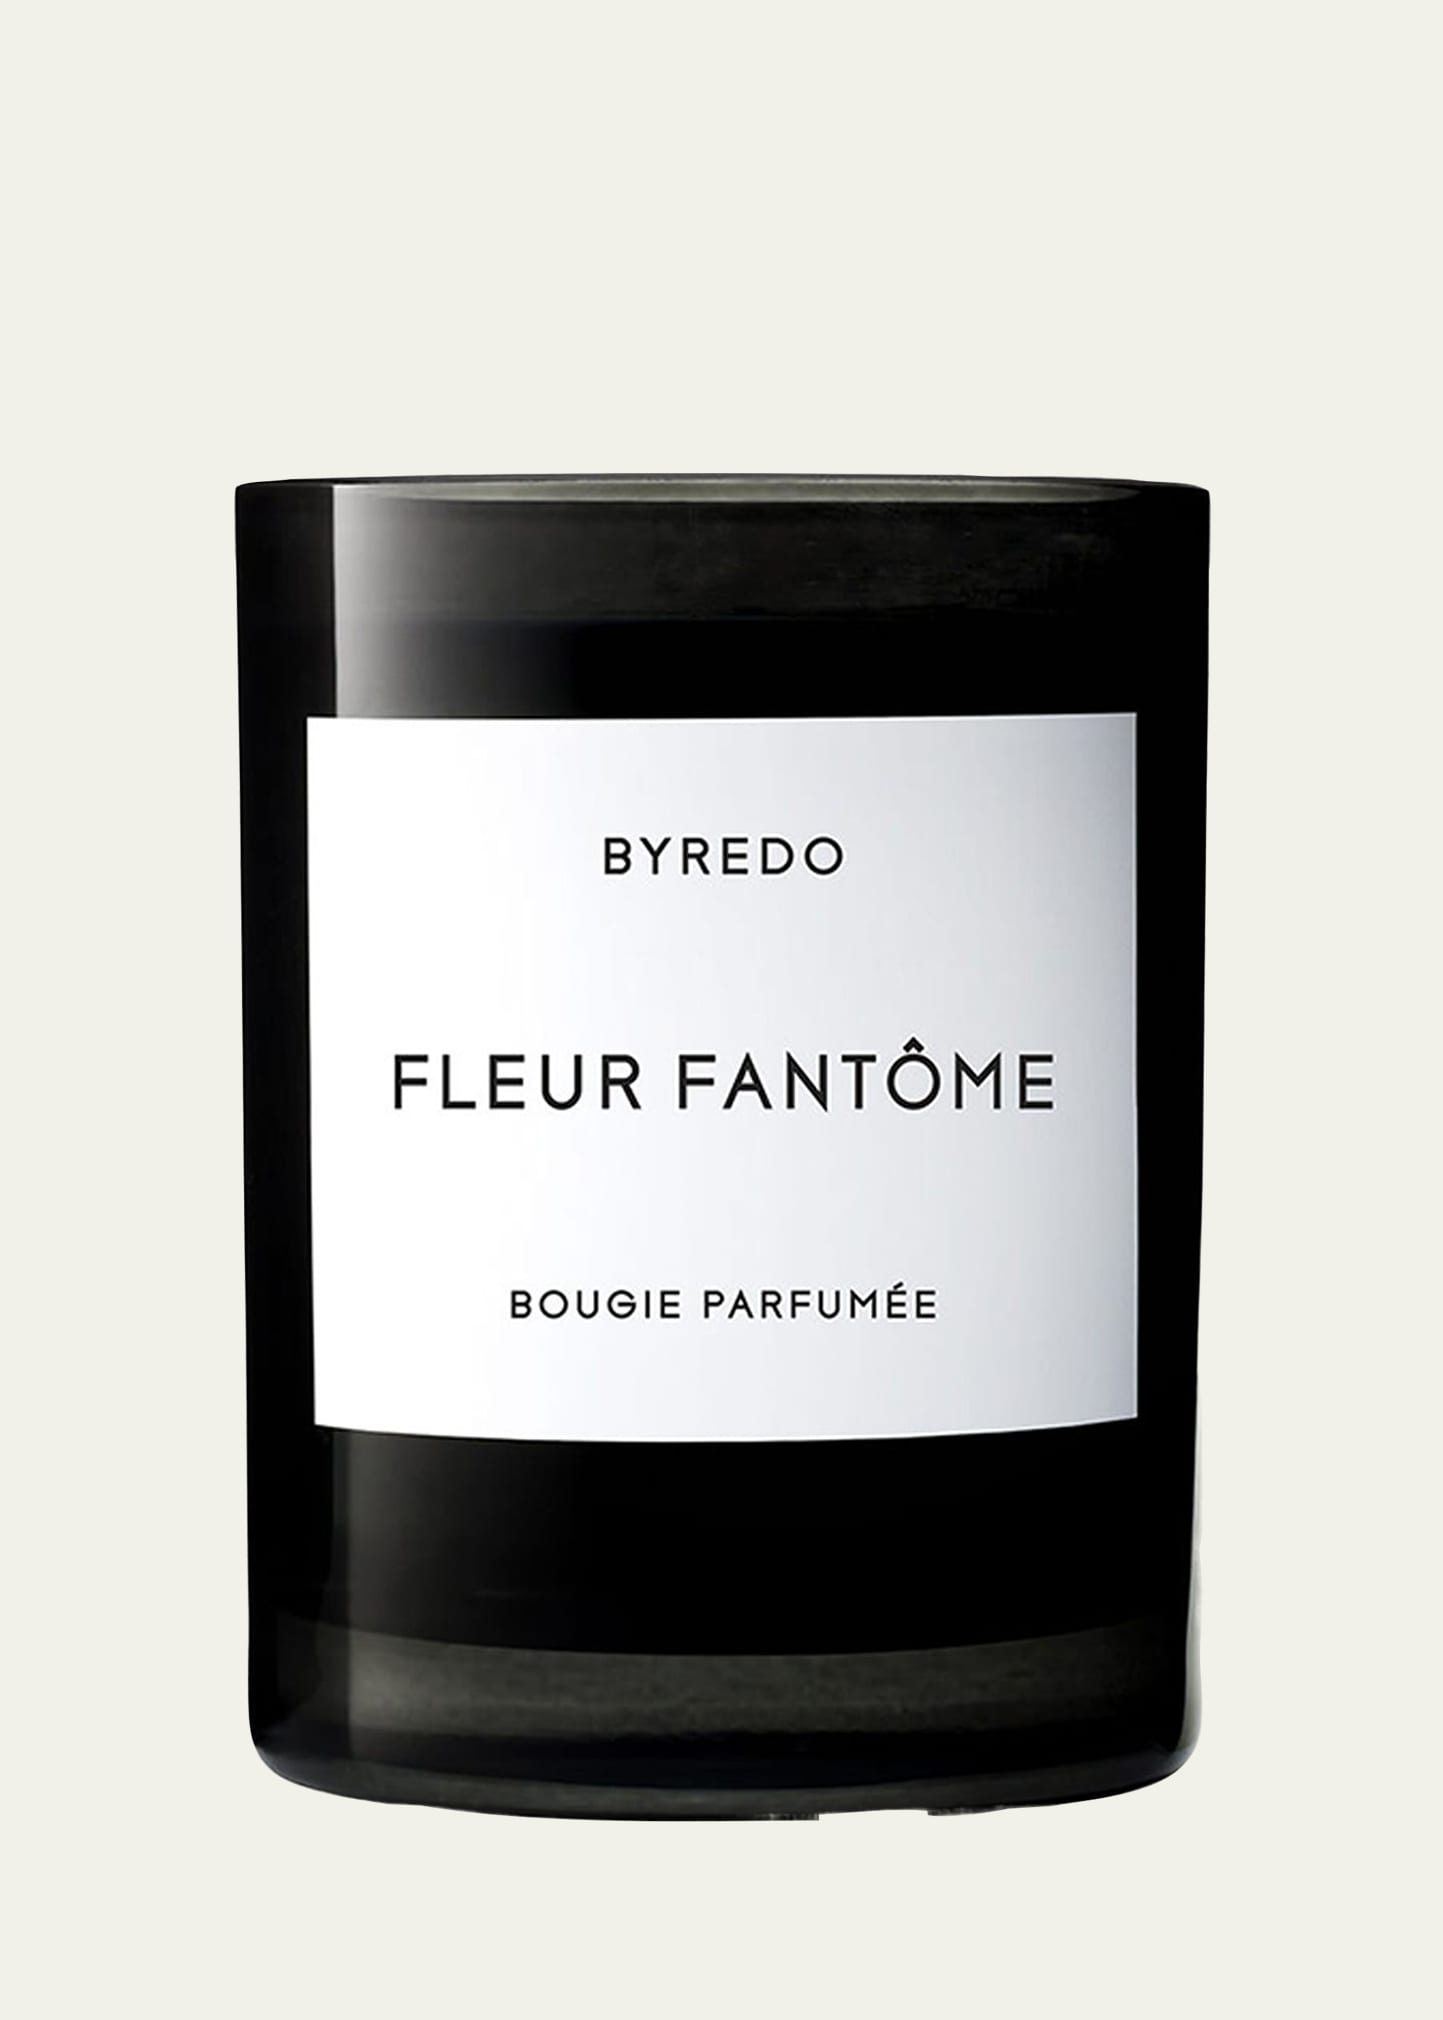 8.5 oz. Fleur Fantôme Bougie Parfumée Scented Candle